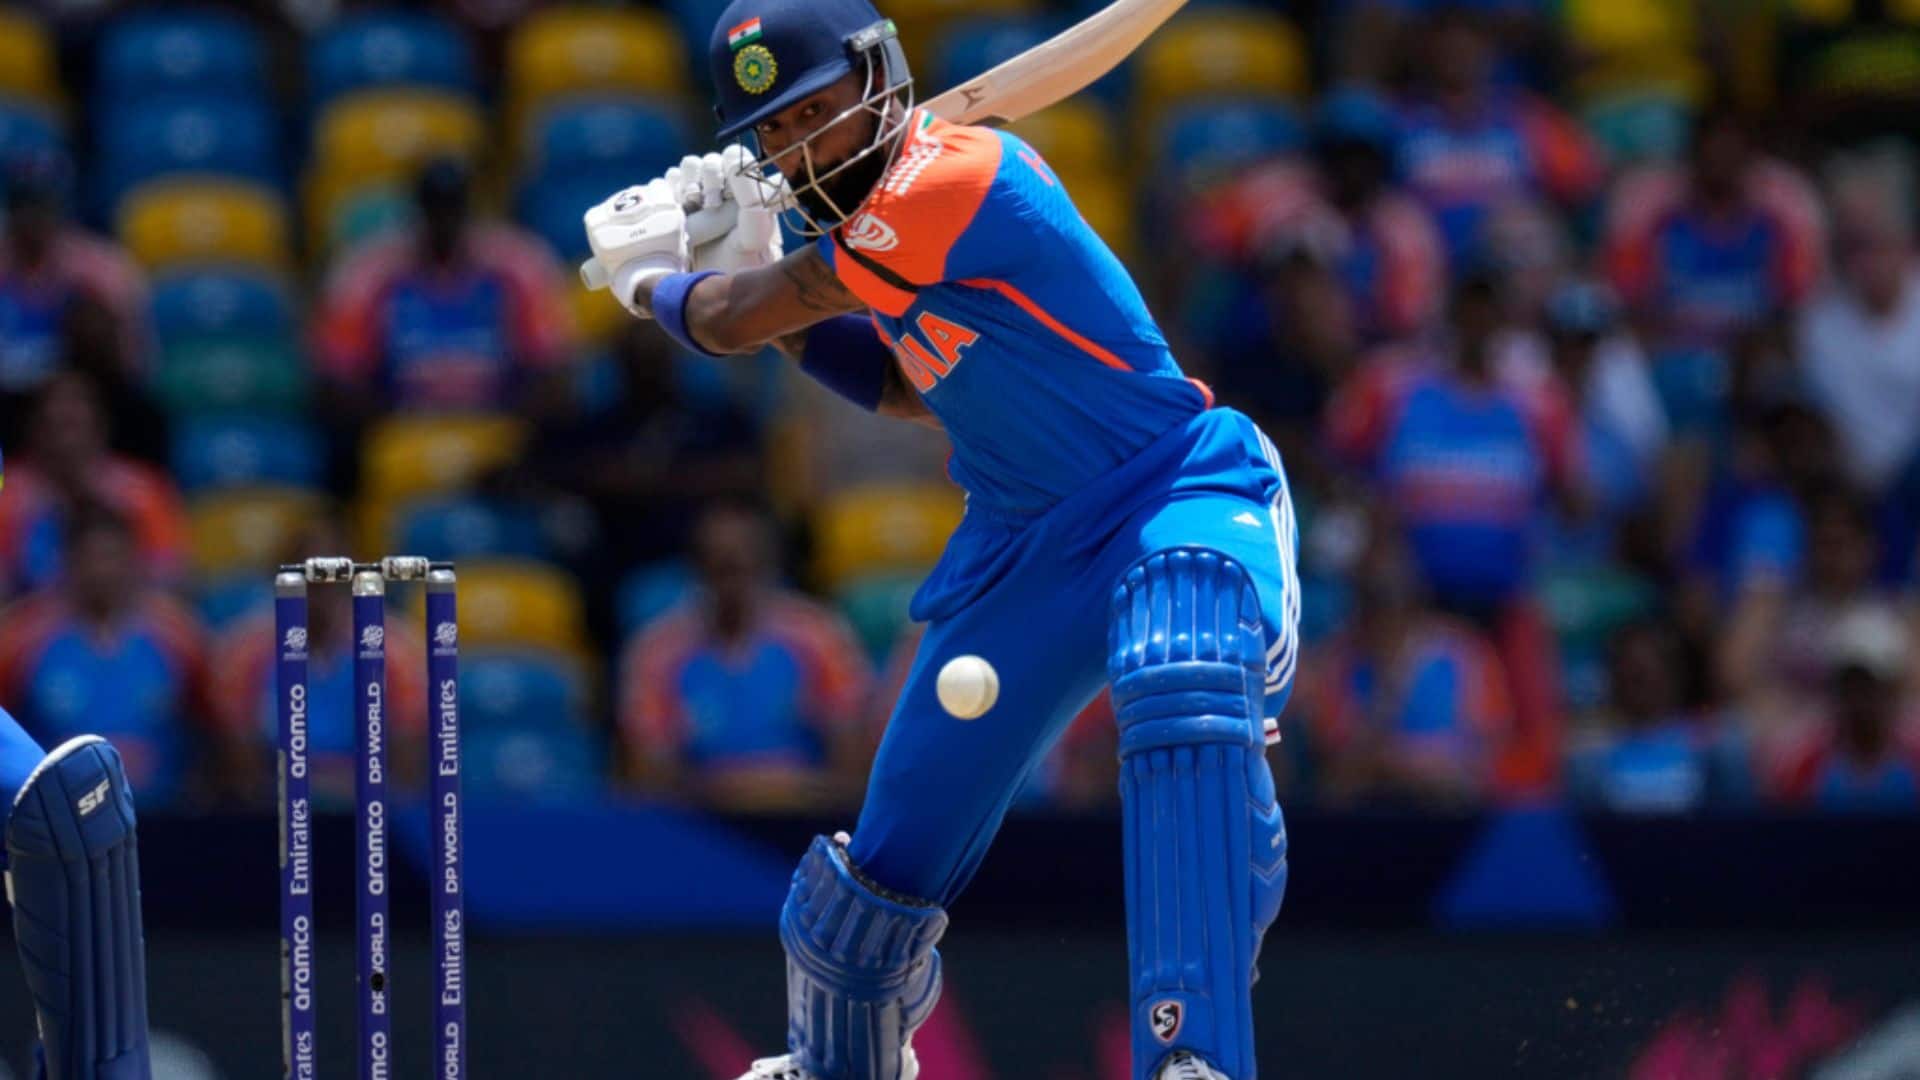 हार्दिक पांड्या और? 4 खिलाड़ी जो भारत के टी20 कप्तान के रूप में रोहित शर्मा की जगह ले सकते हैं